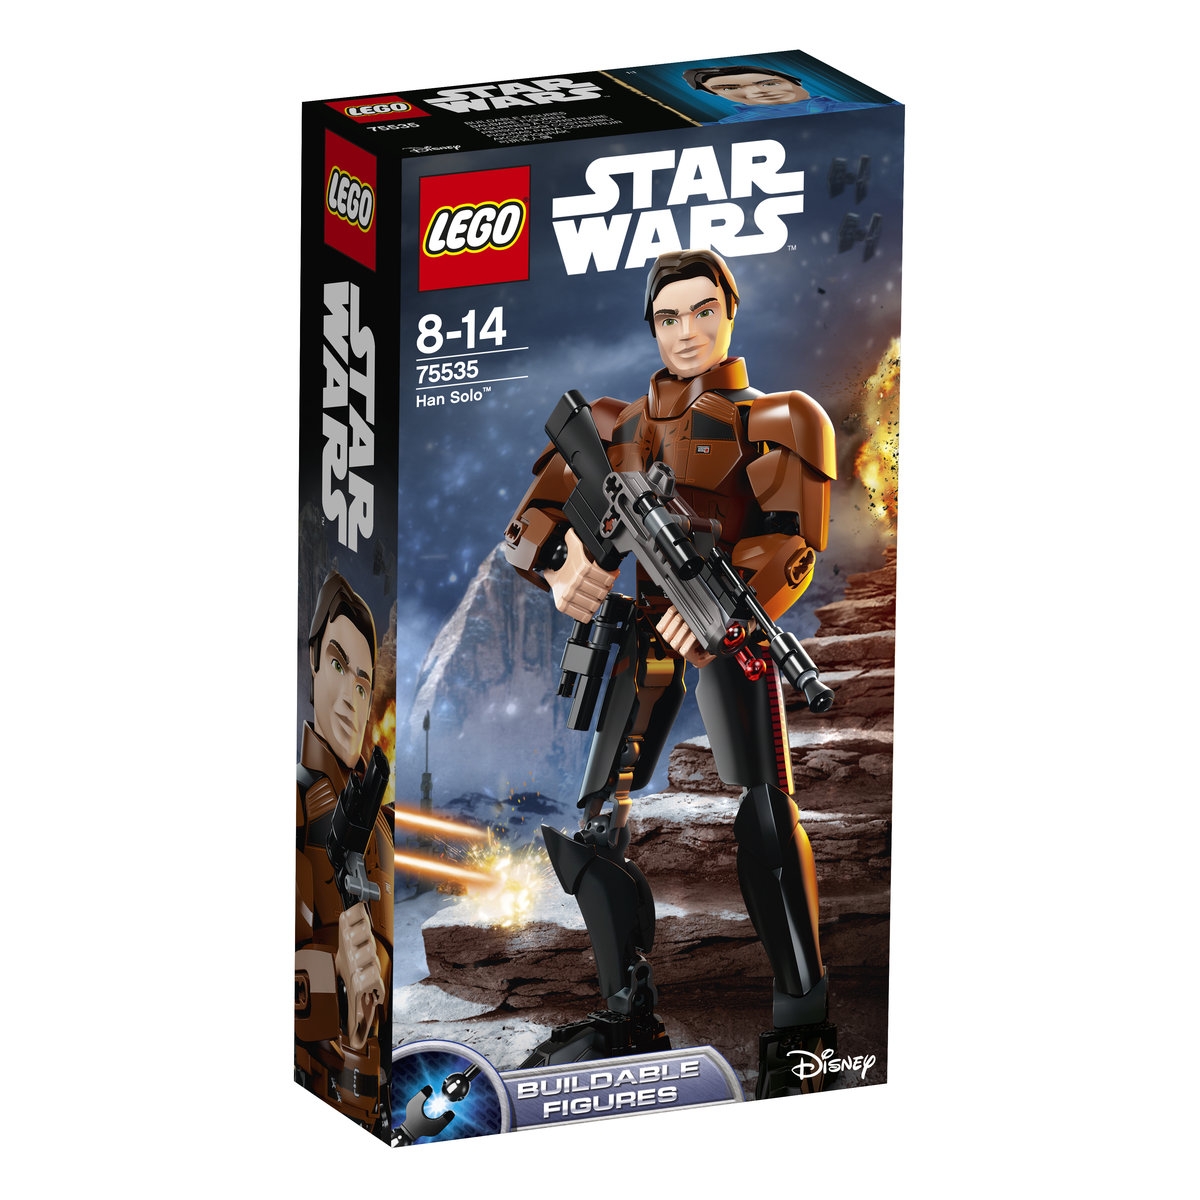 LEGO Star Wars Han Solo 75535